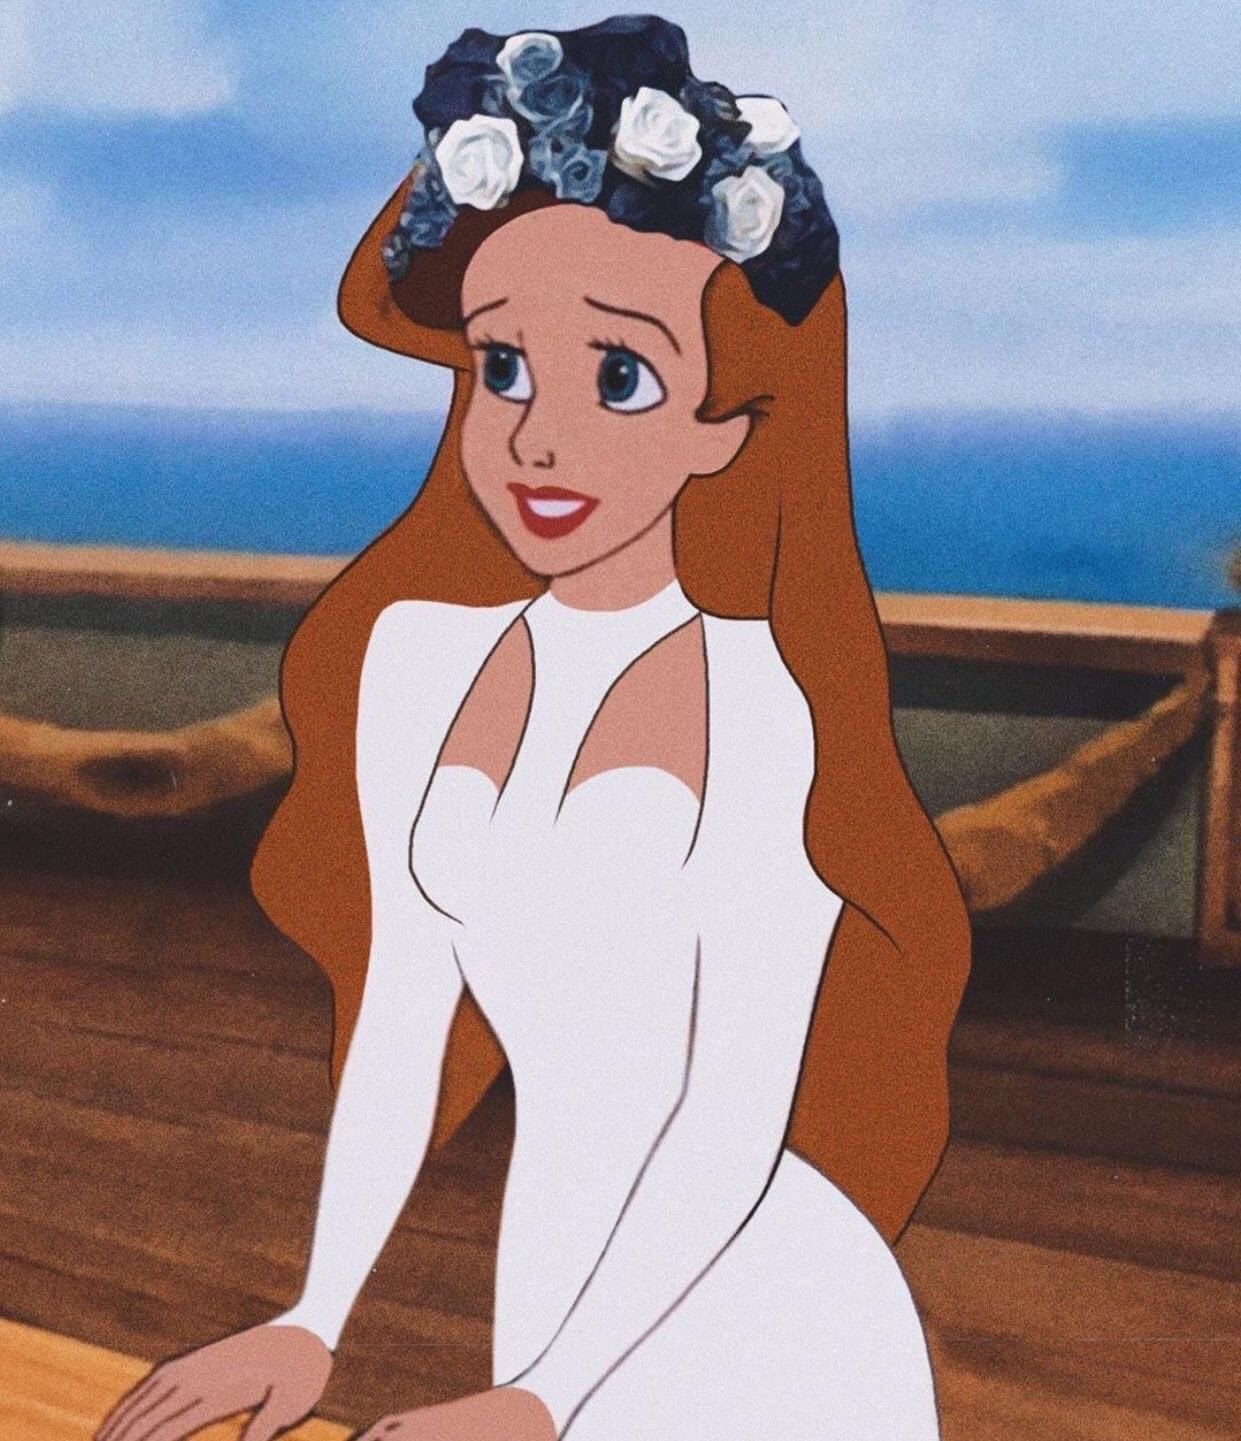 Lana Del Rey Del Rey as a Disney princess